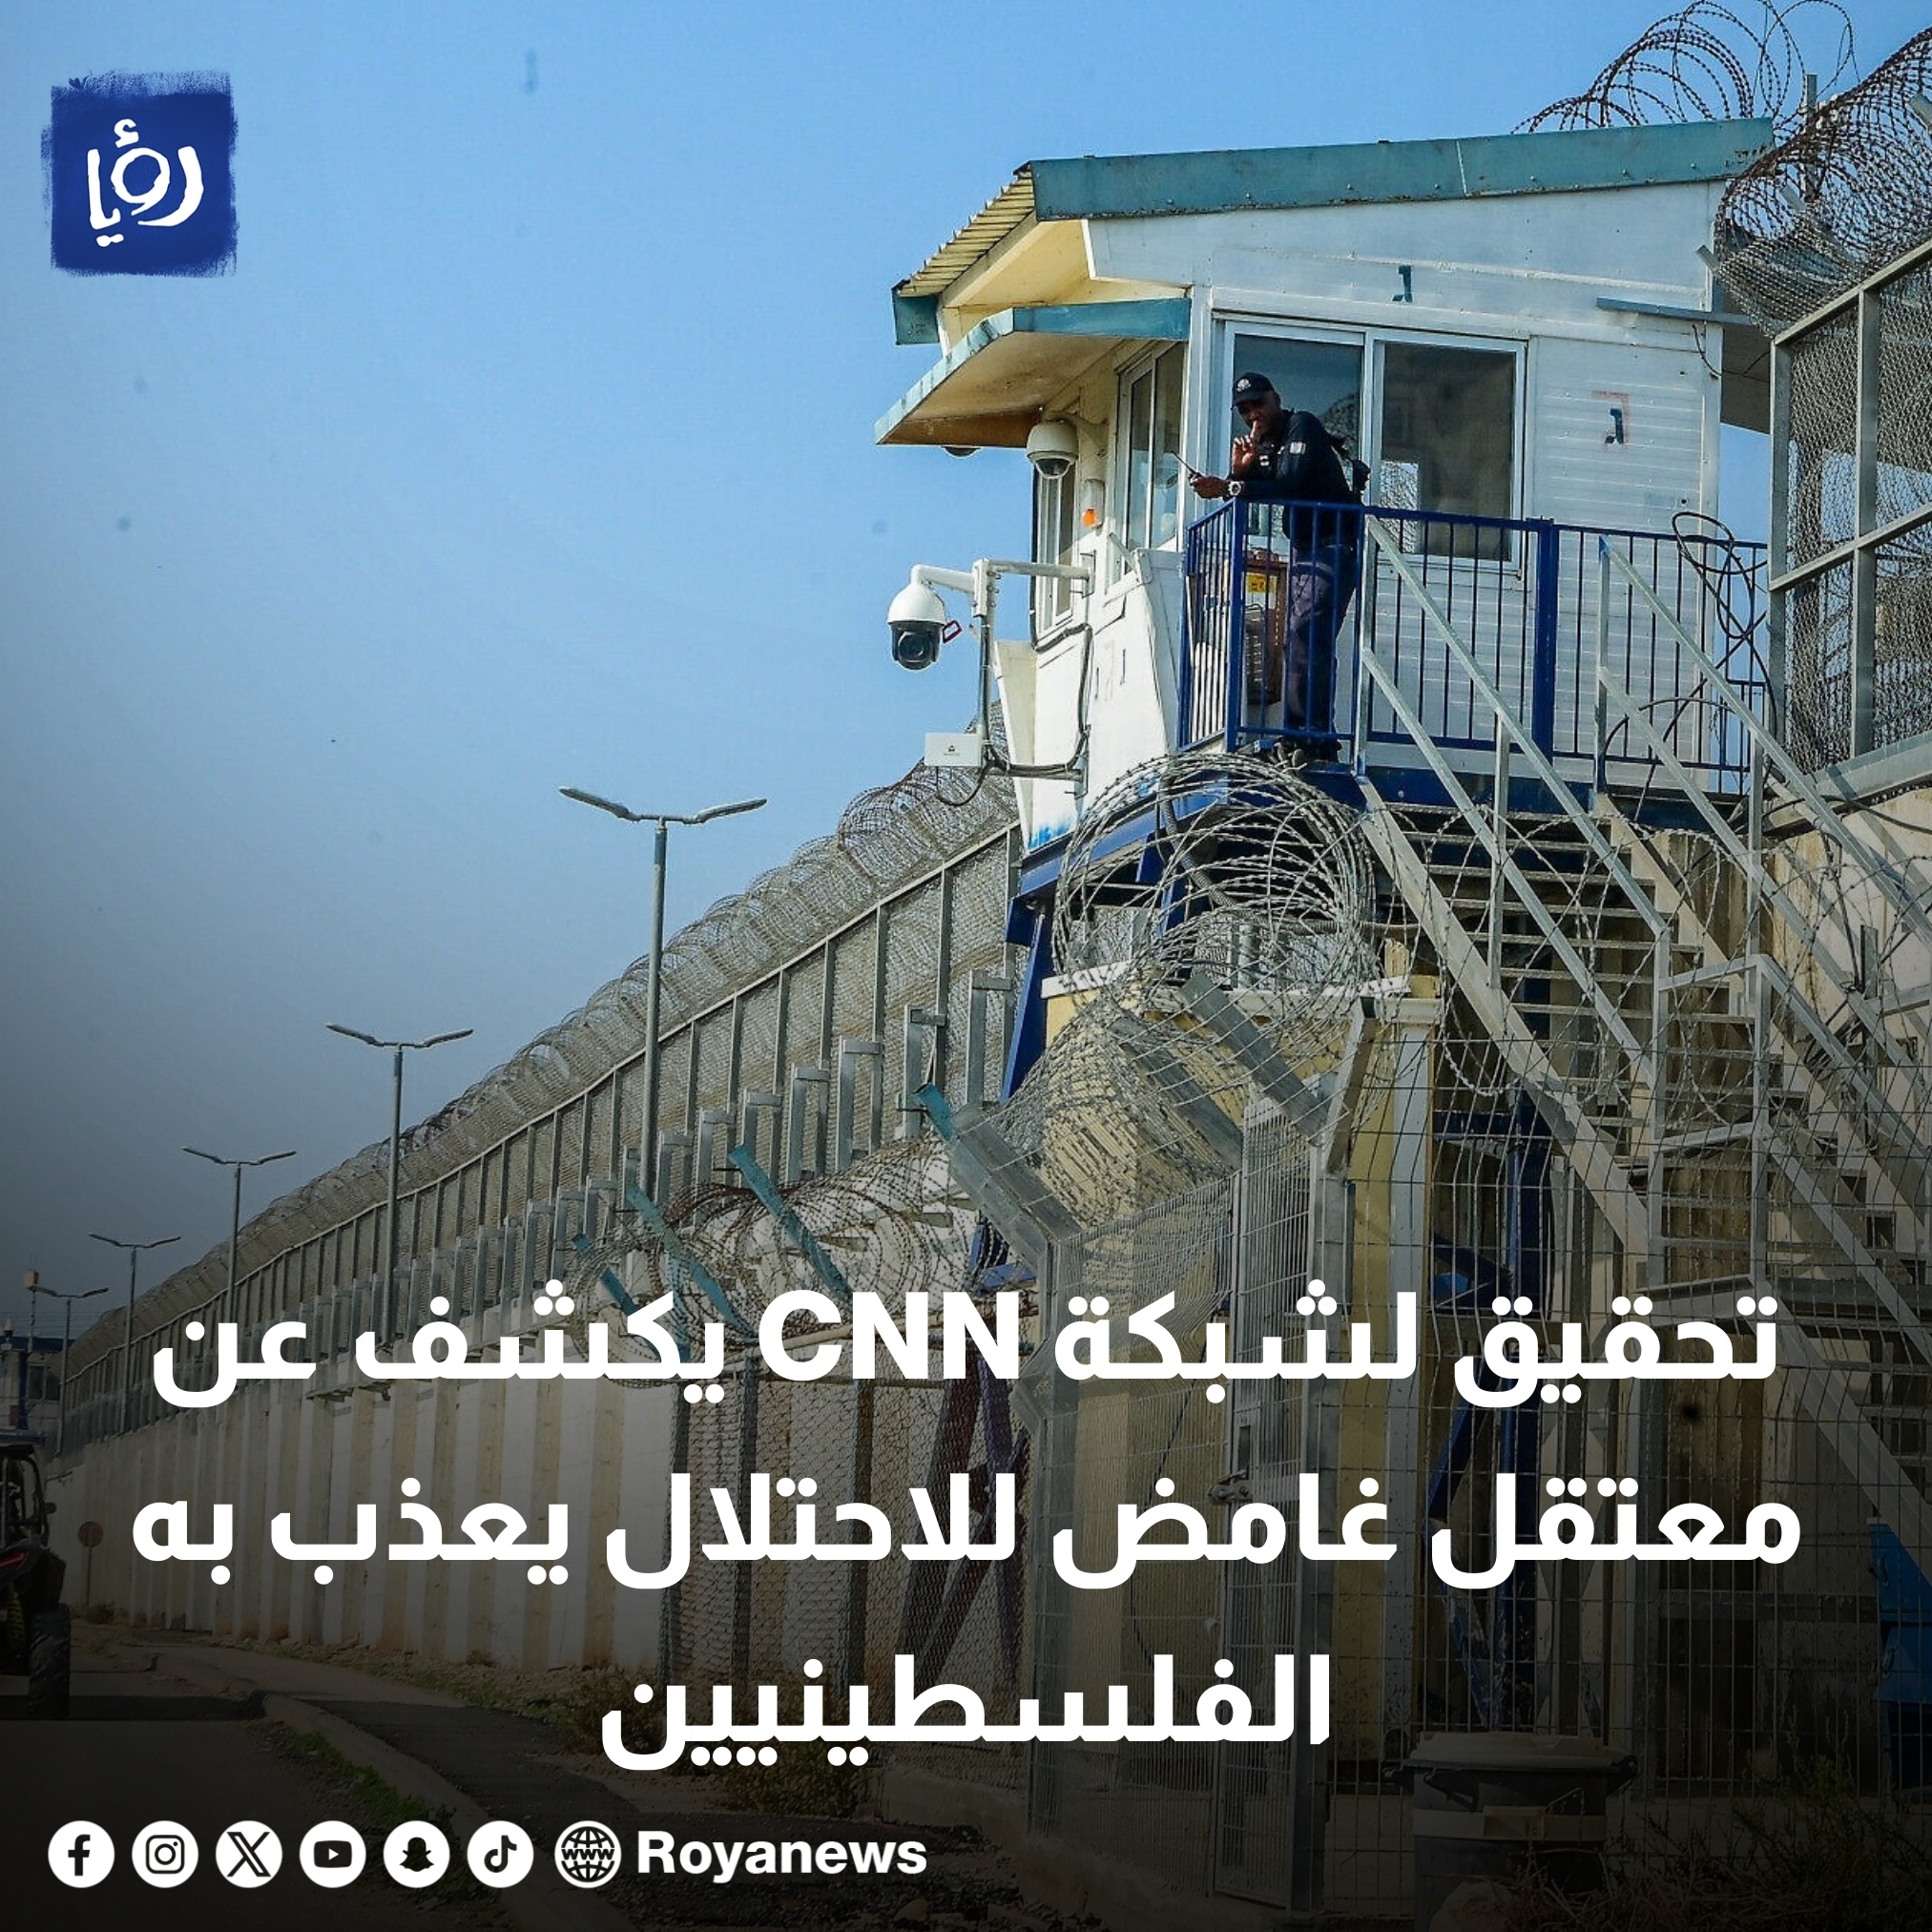 تحقيق لشبكة CNN يكشف عن معتقل غامض للاحتلال يعذب به الفلسطينيين #عاجل 